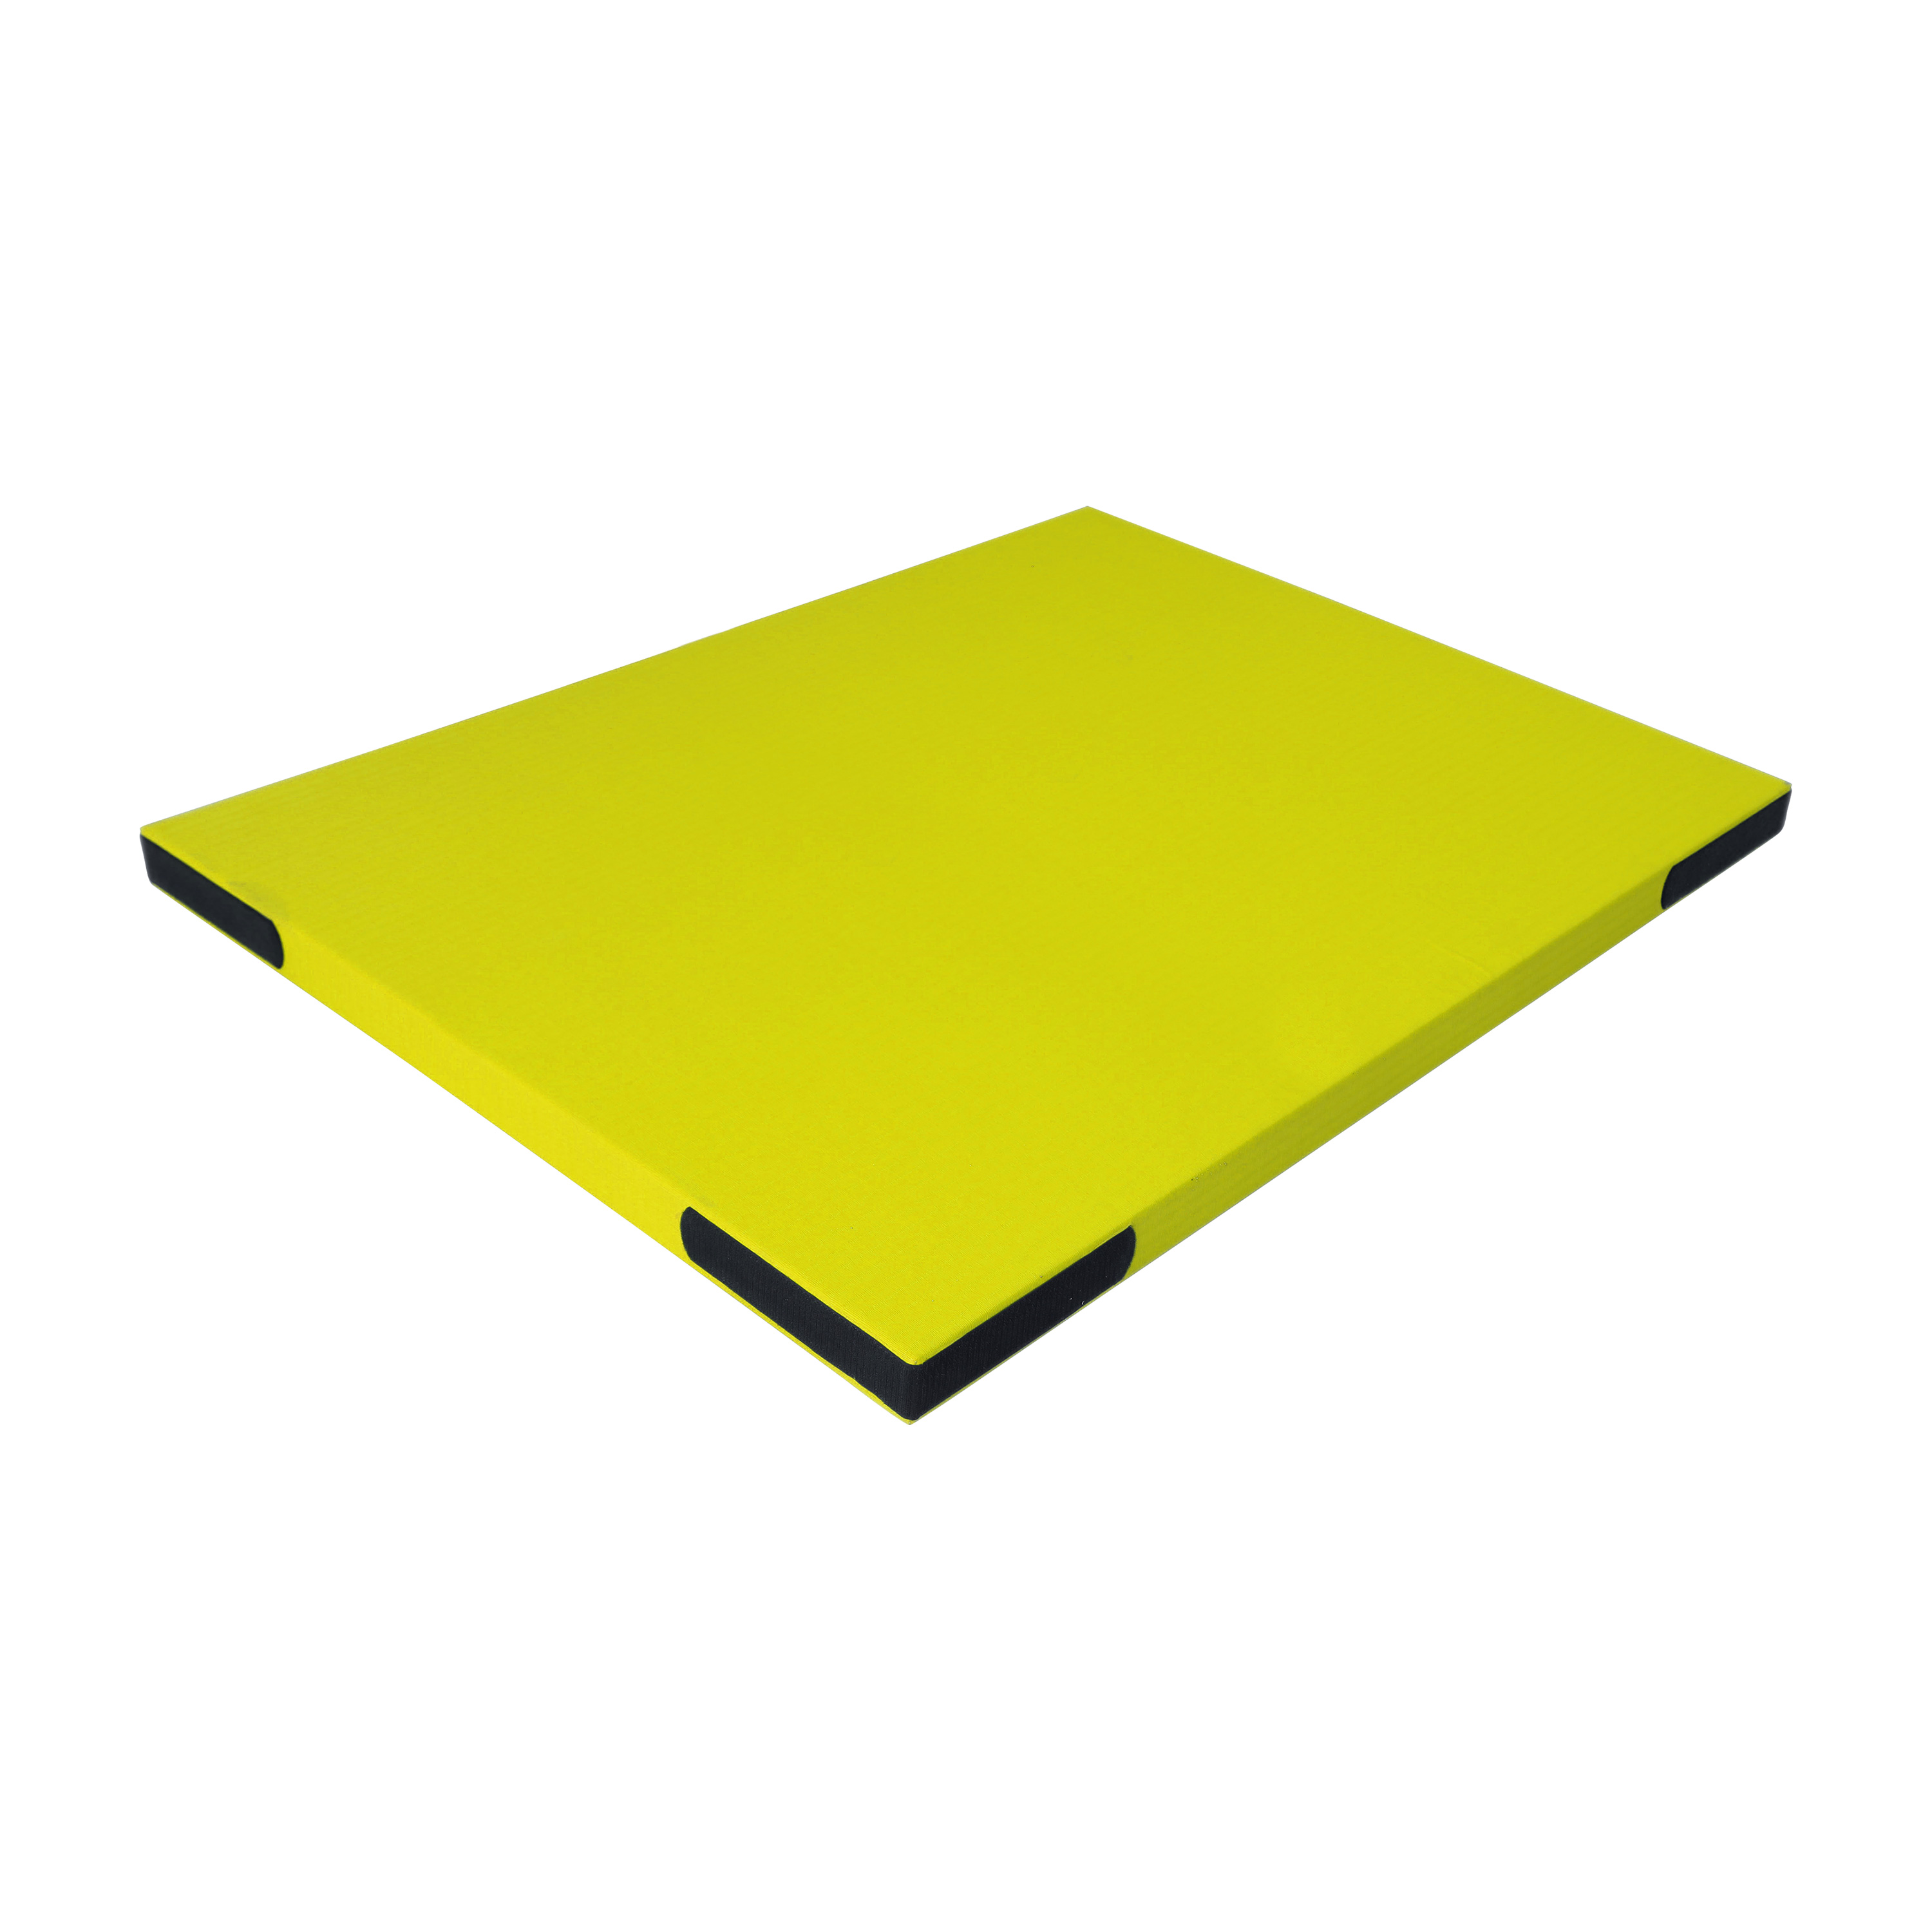 Fallschutzmatte 'Light' gelb mit Klett, 150 x 100 cm, 5,1 kg